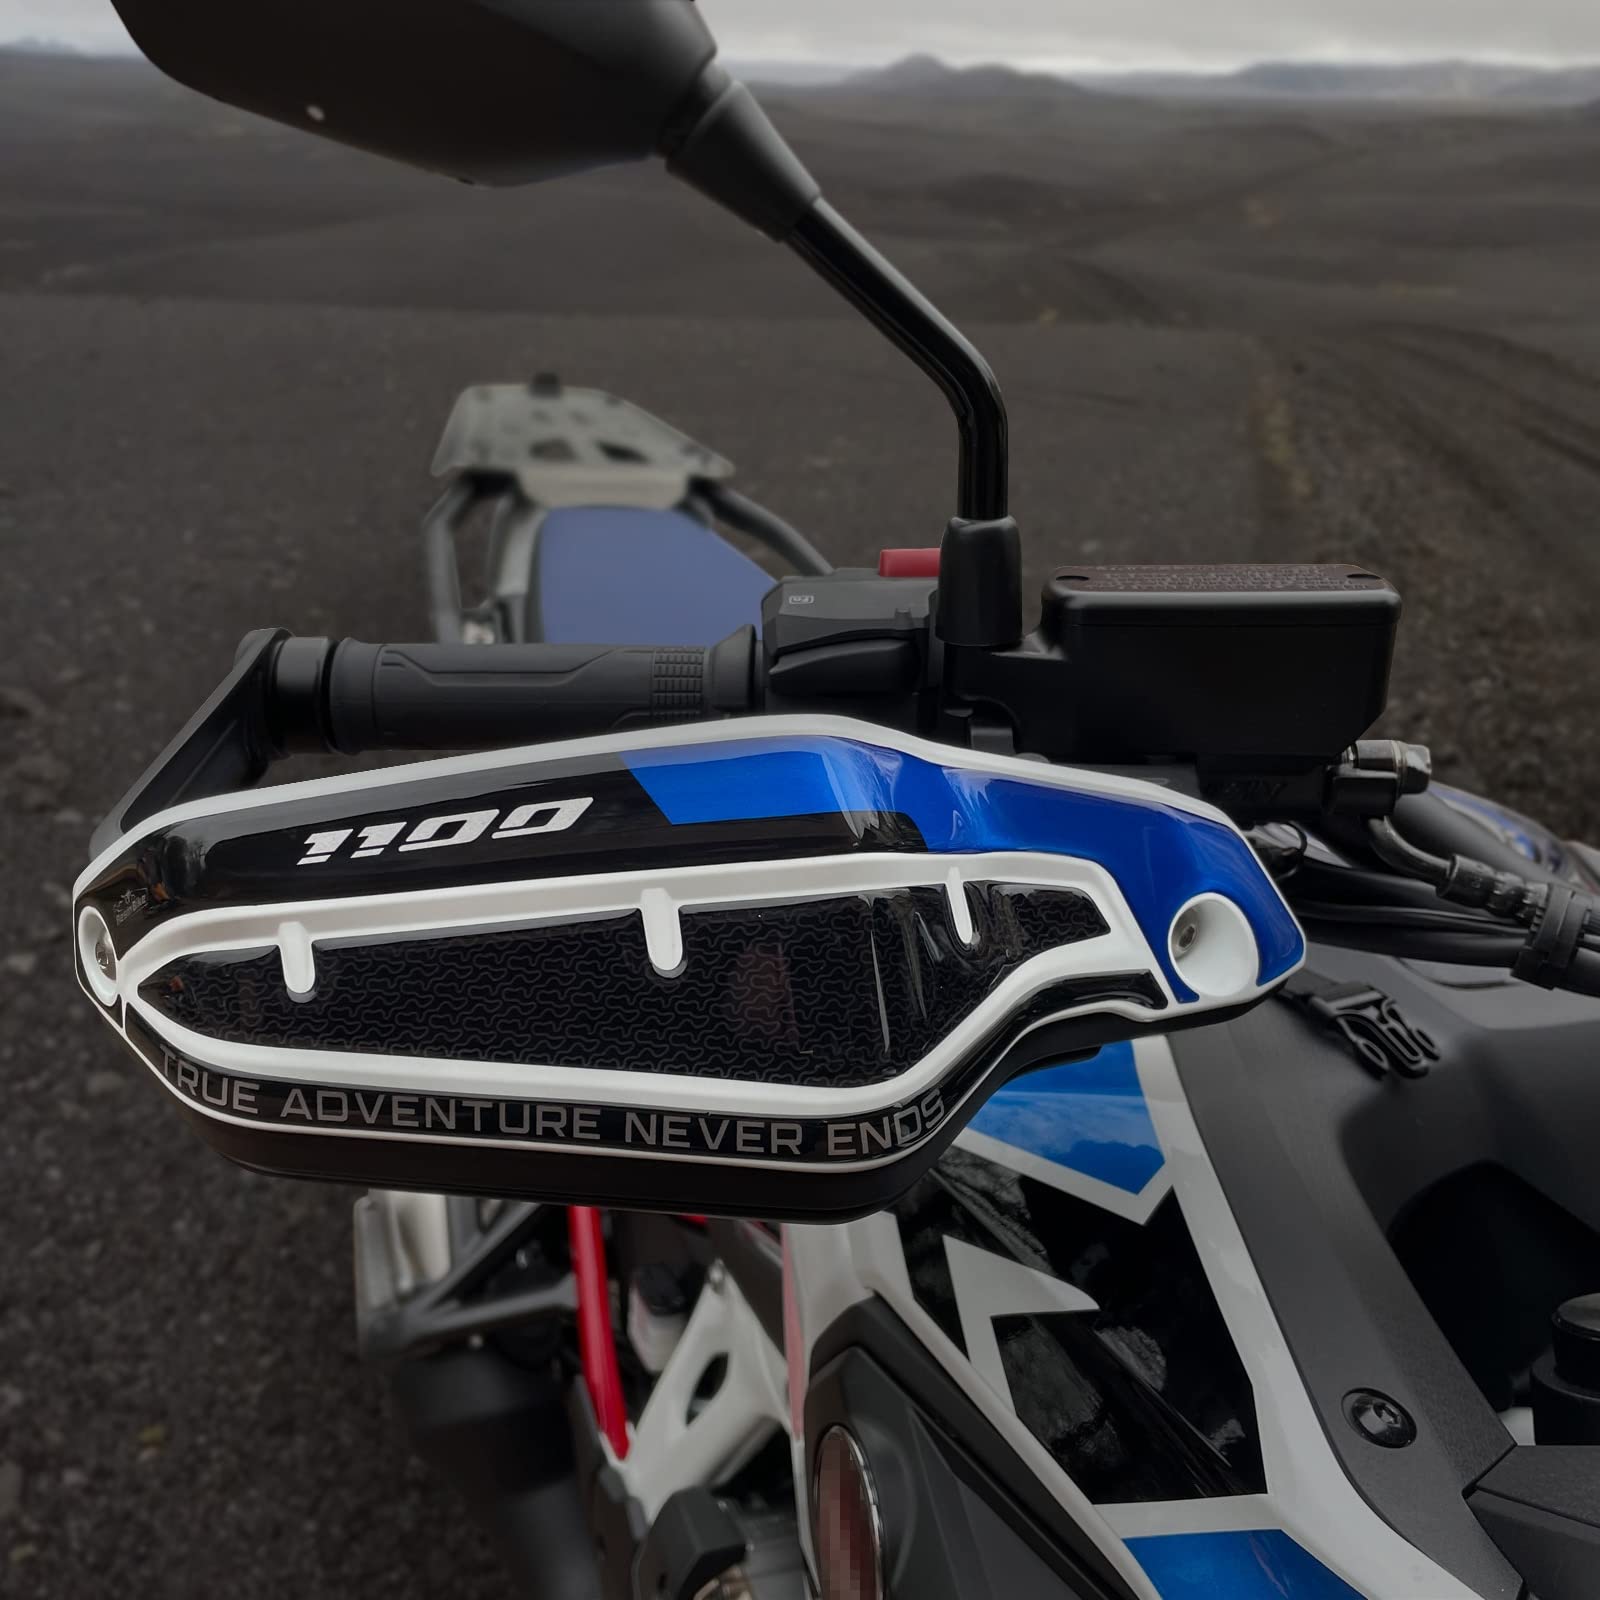 Resin Bike Aufkleber für Motorrad Kompatibel mit Honda Africa Twin 1100 CRF 1100 L 2022-2023. Handschutz vor Stößen und Kratzern. 3D-Harzklebstoff – Stickers - Made in Italy von Resin Bike